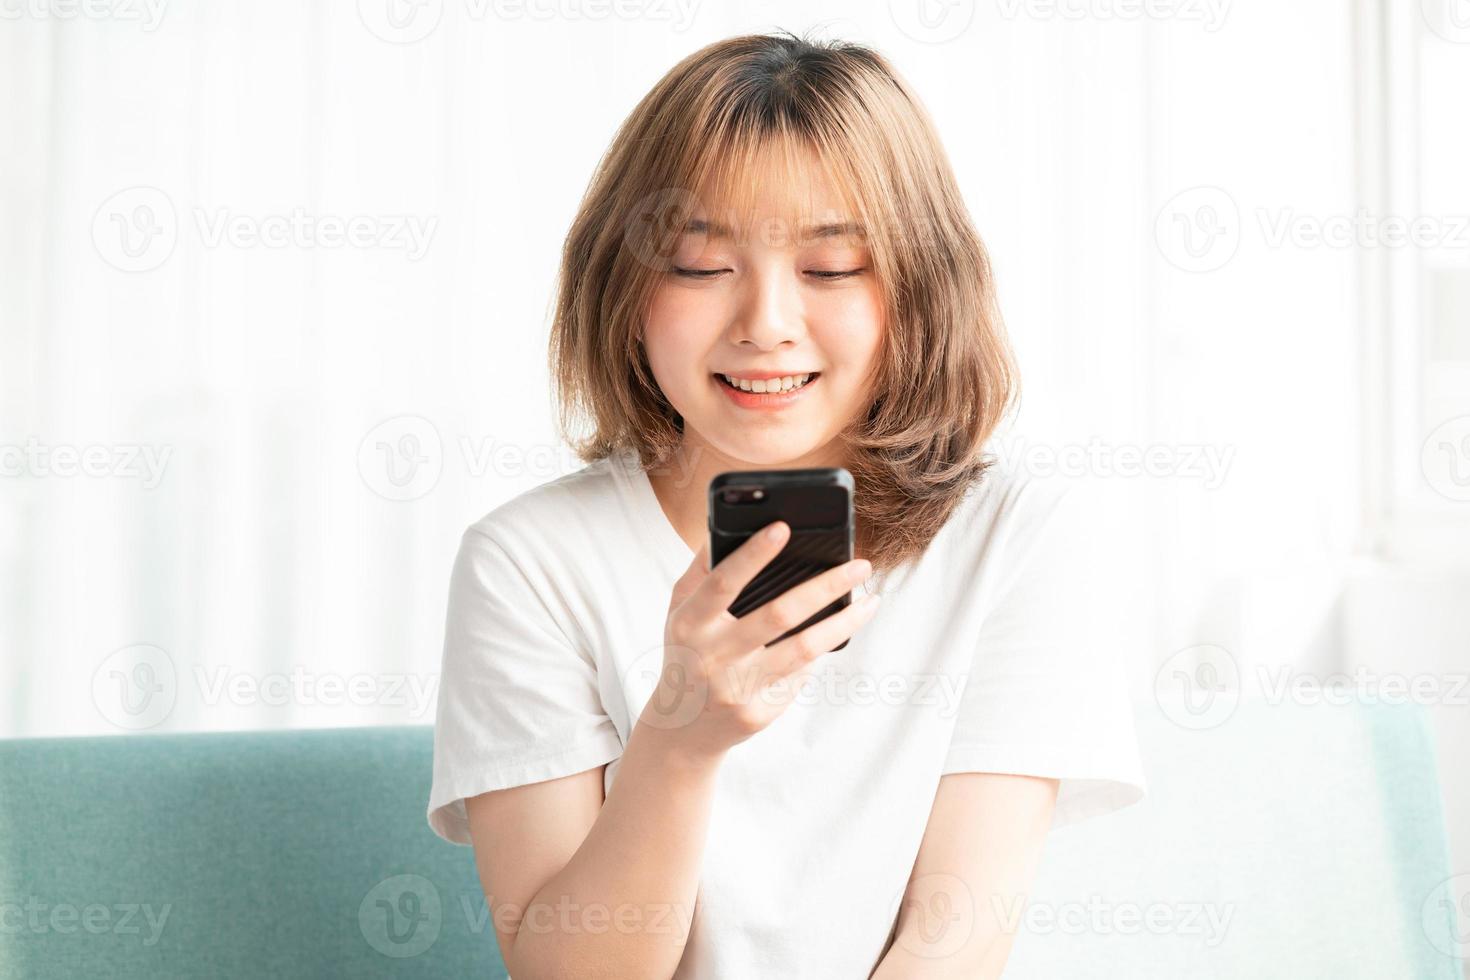 jovem asiática sentada no sofá usando o telefone com uma cara alegre foto